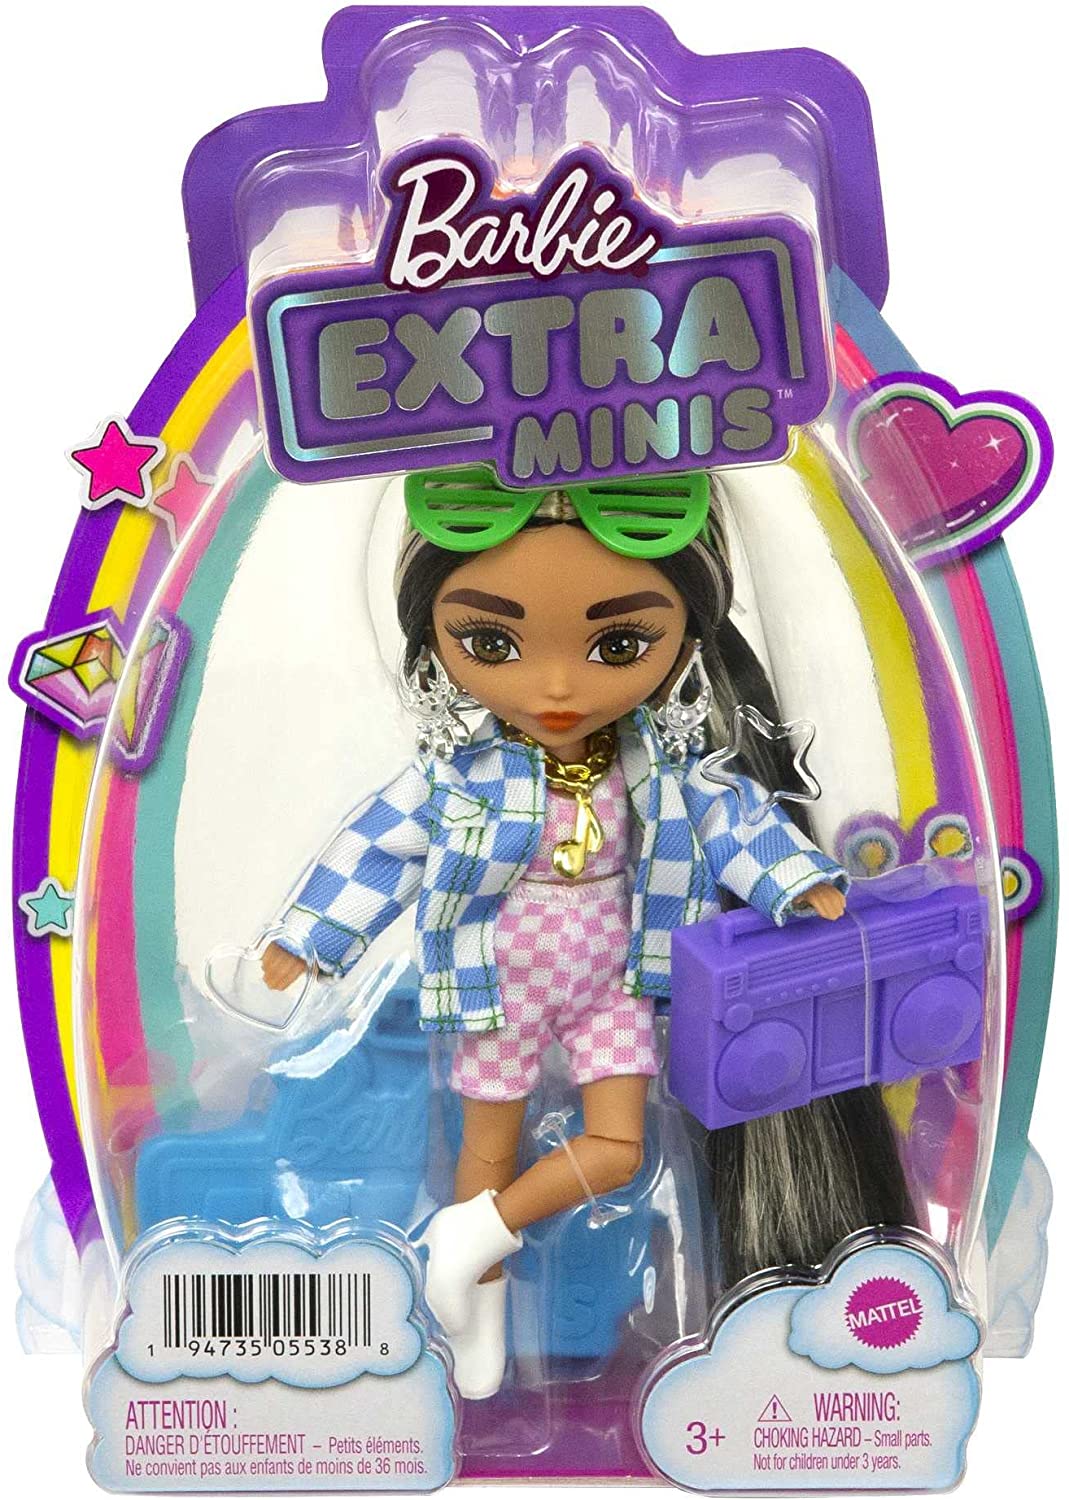 Barbie Extra Minis Capelli Bicolor